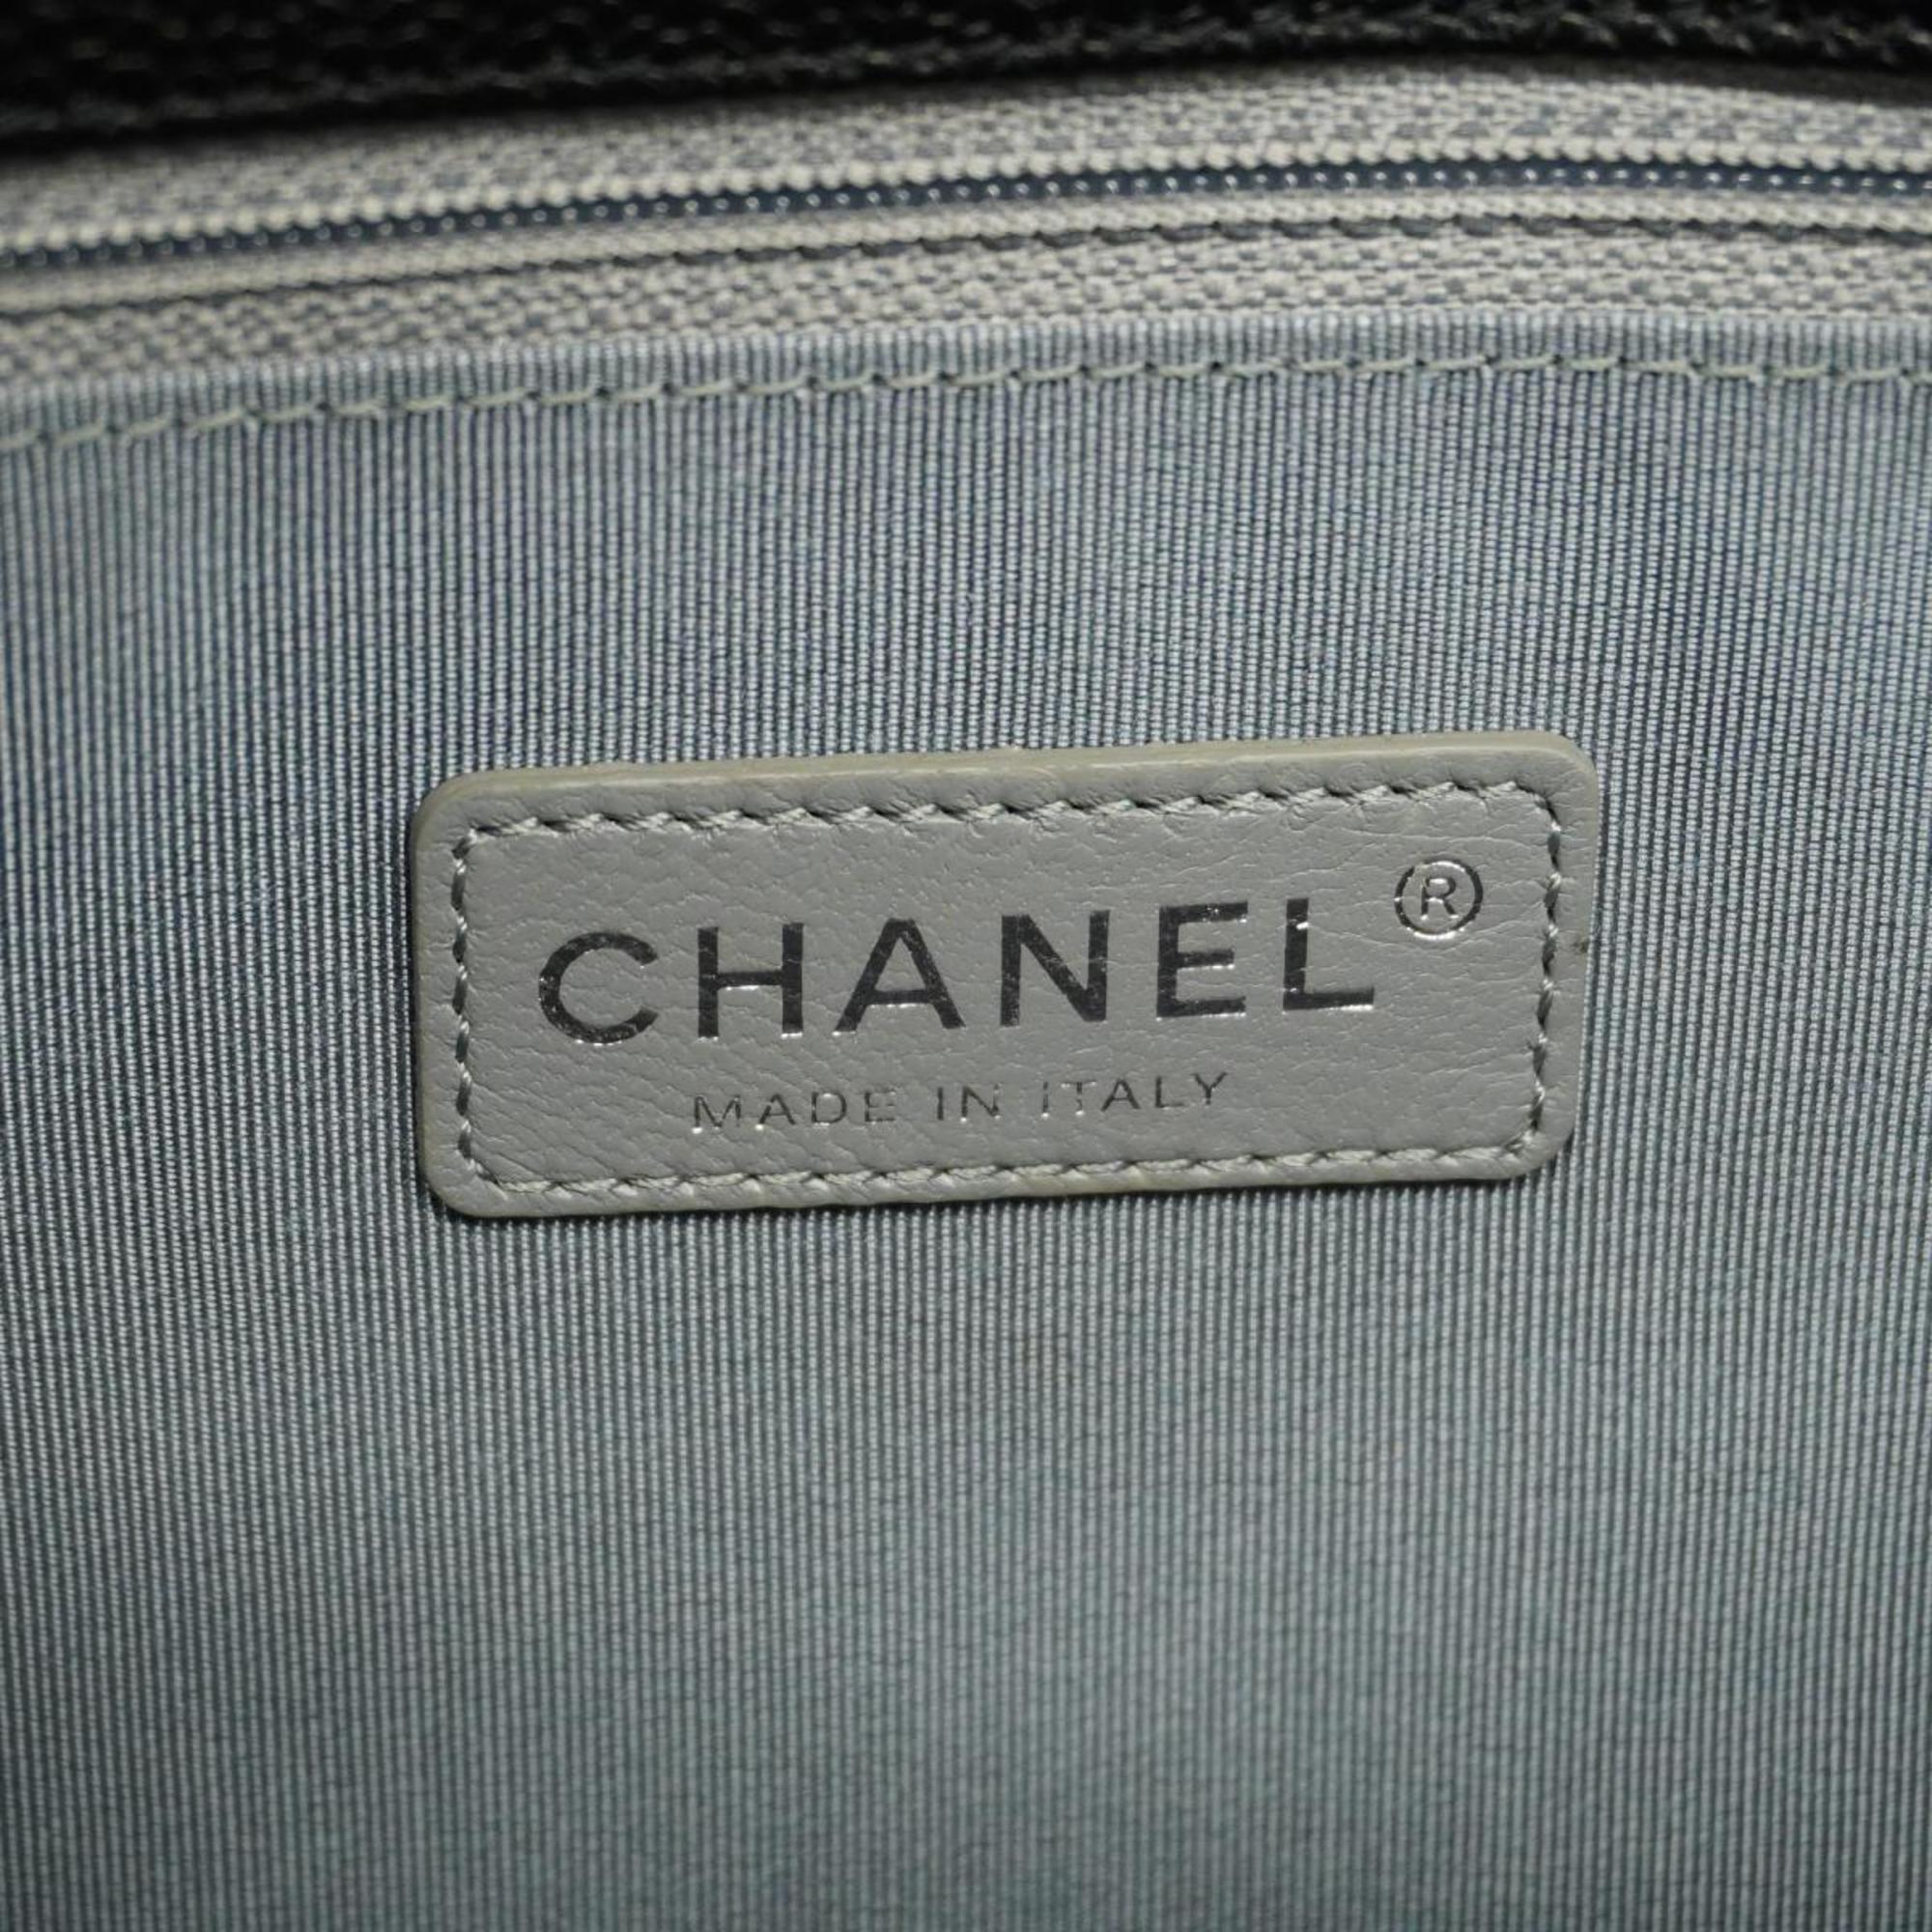 シャネル(Chanel) シャネル ショルダーバッグ マトラッセ フレンチリビエラ Wチェーン キャビアスキン ブラック   レディース